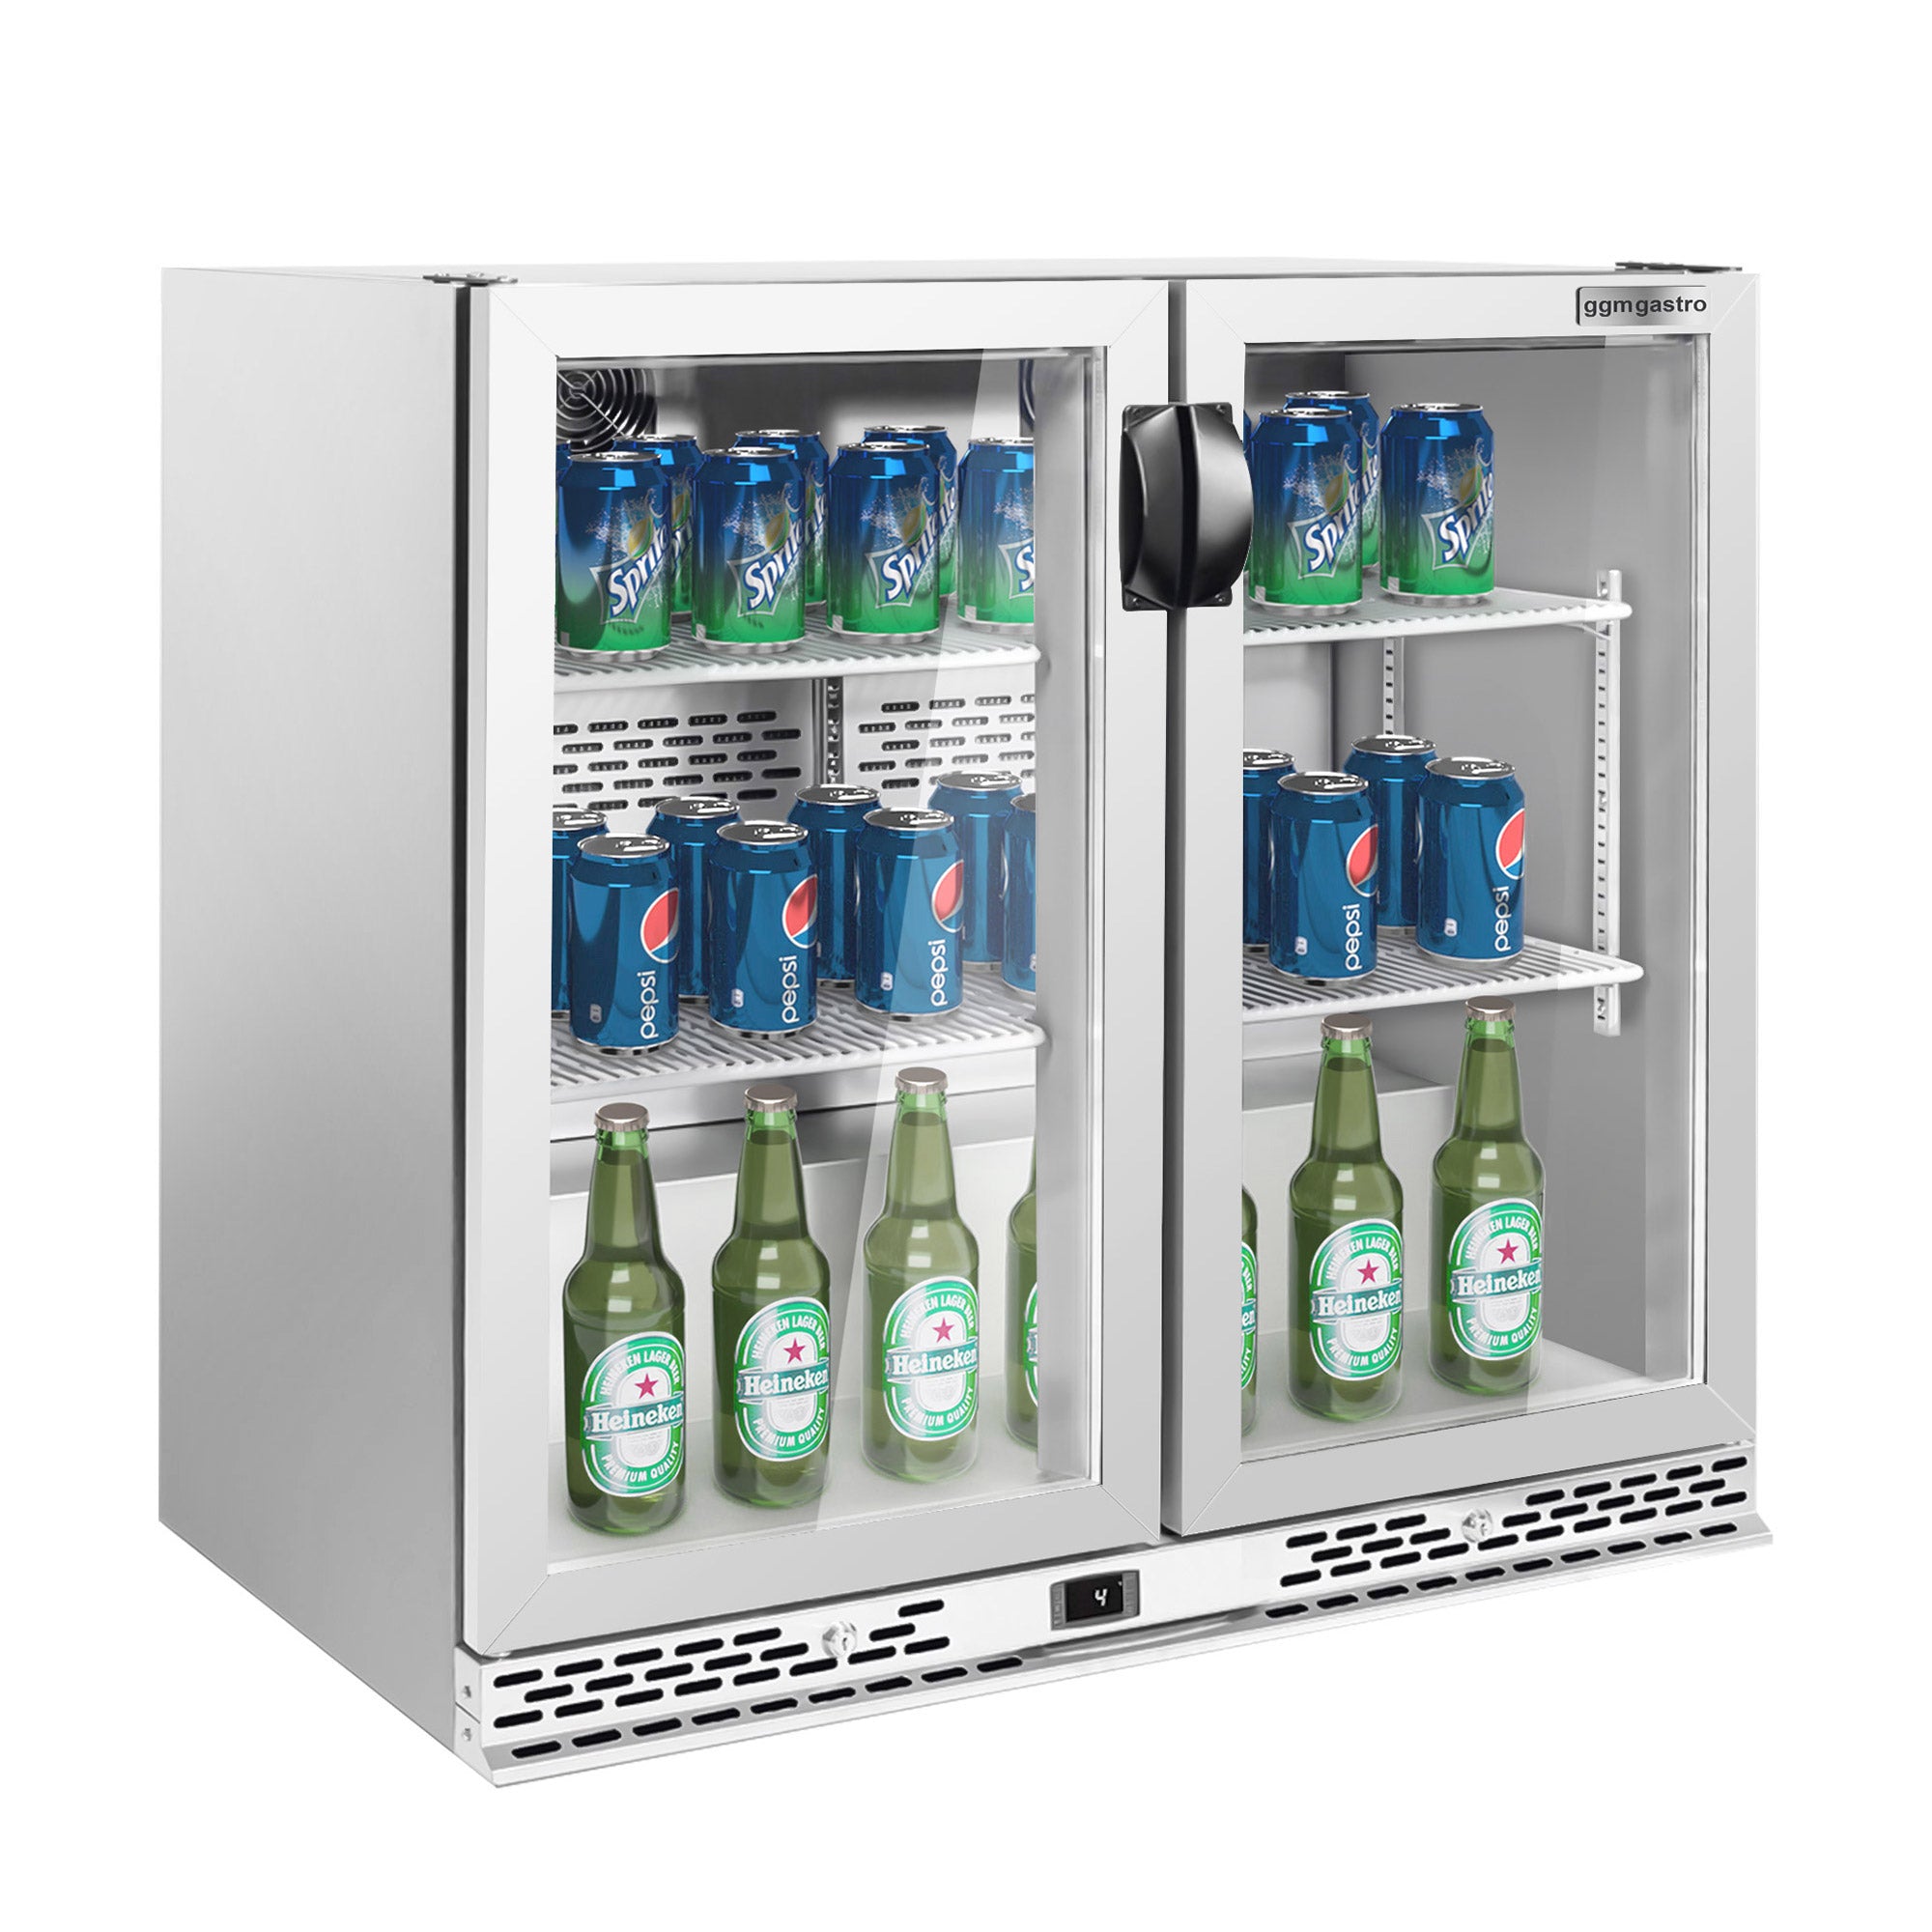 Хладилна маса за бар напитки - 0,9 x 0,51 m - 193 литра - с 2 стъклени врати - неръждаема стомана